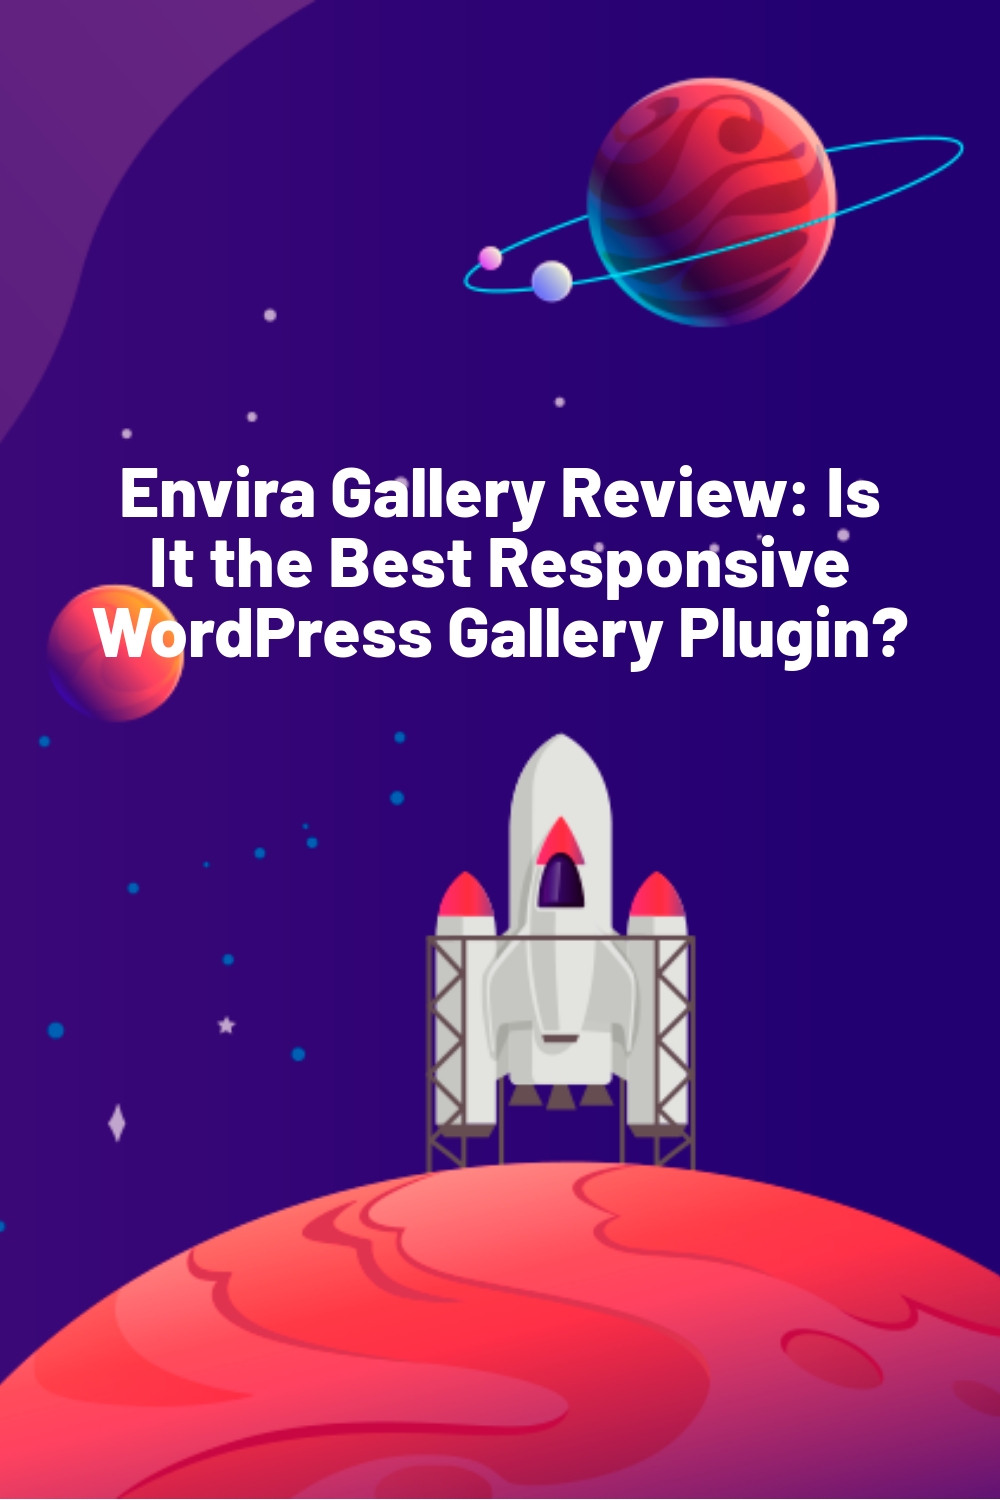 Envira Gallery Review: Is It the Best Responsive WordPress Gallery Plugin?